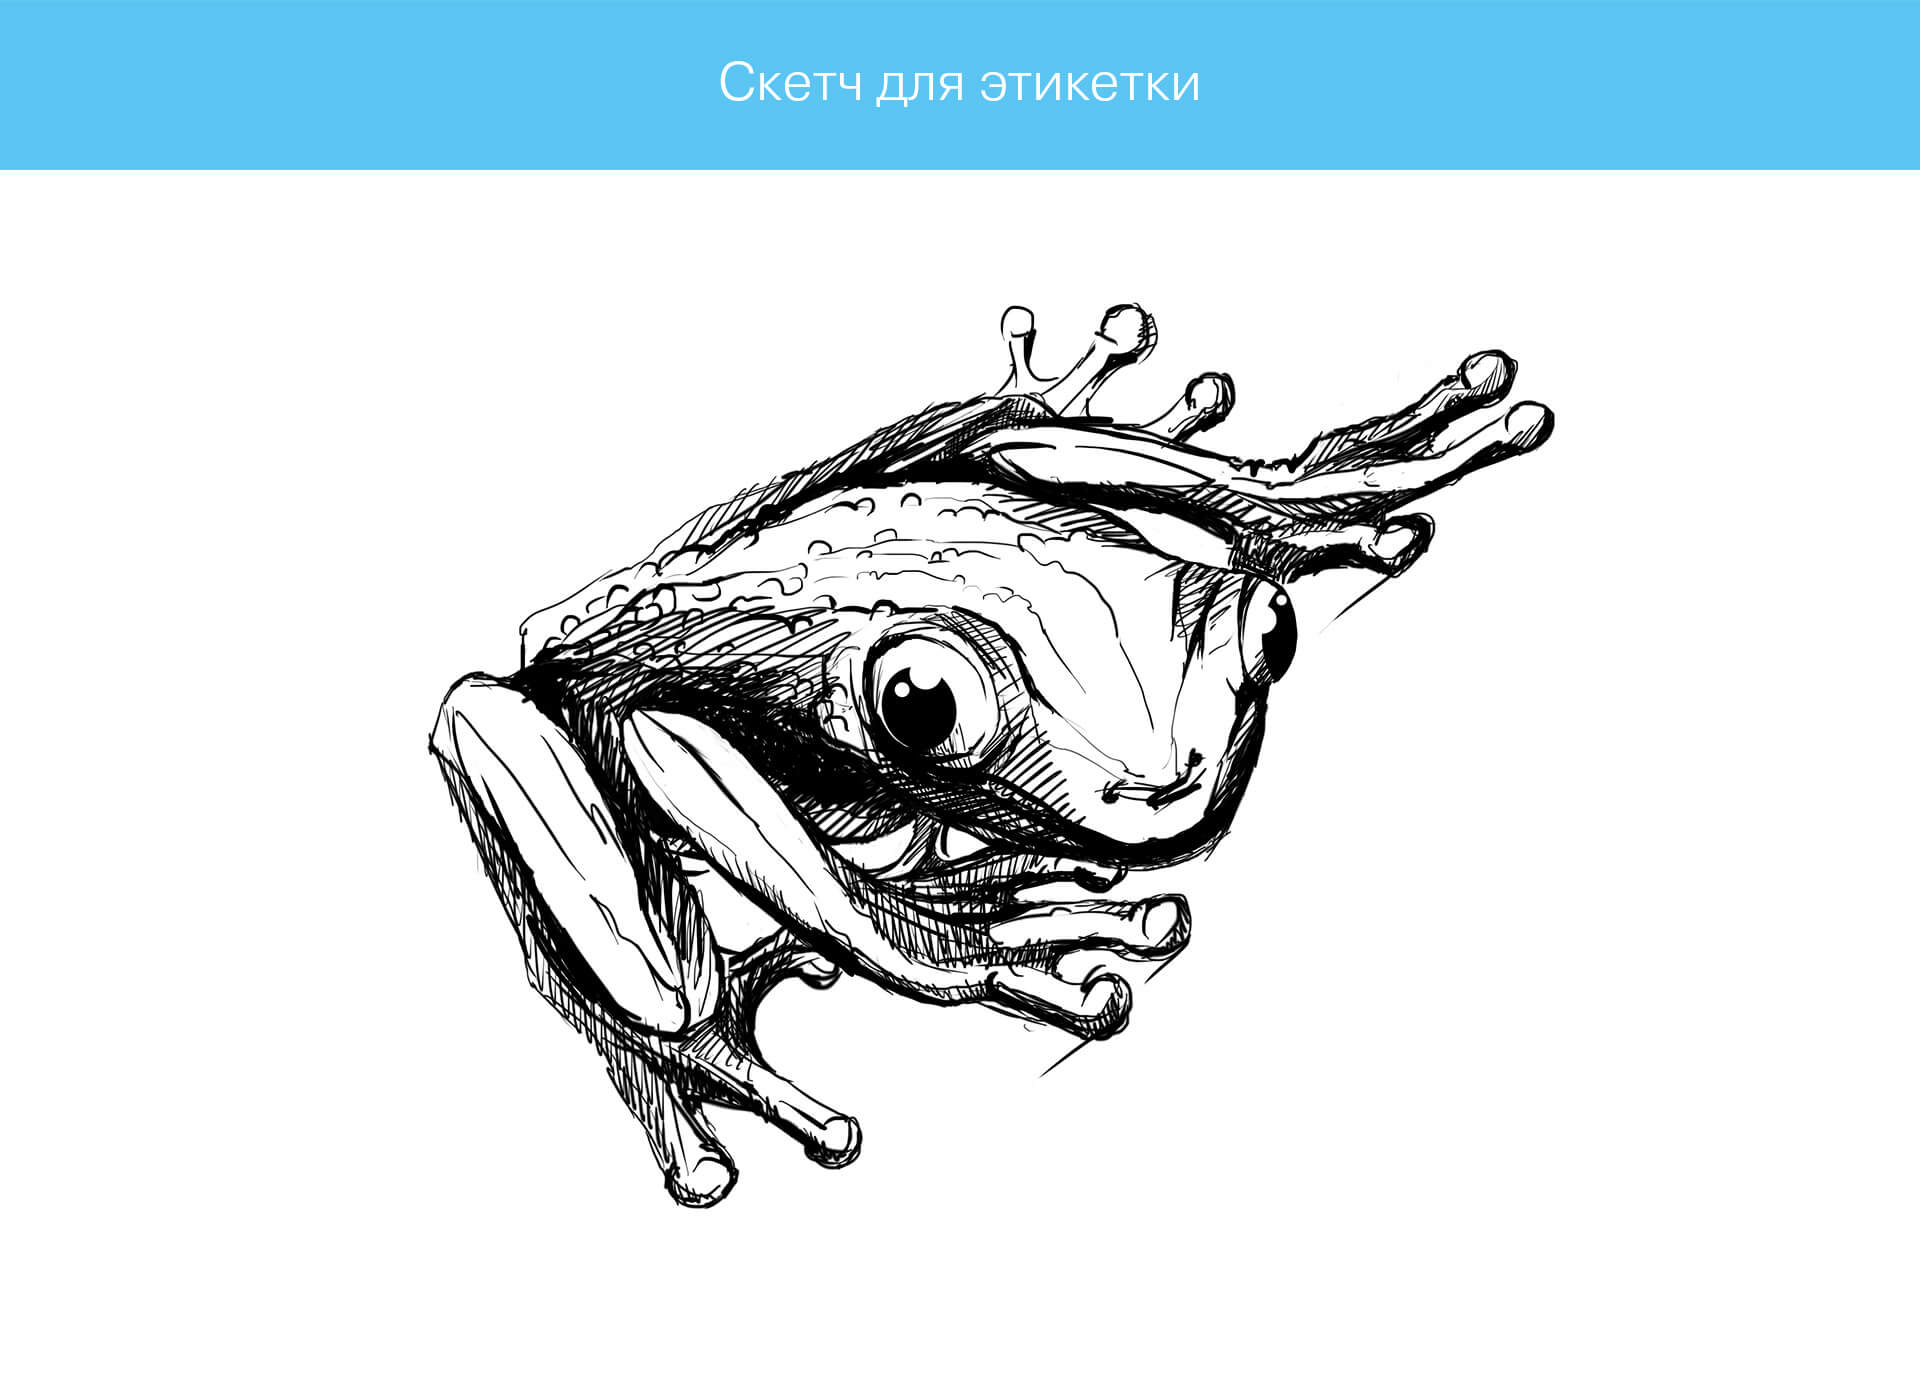 prokochuk_irina_illustration-frog_1